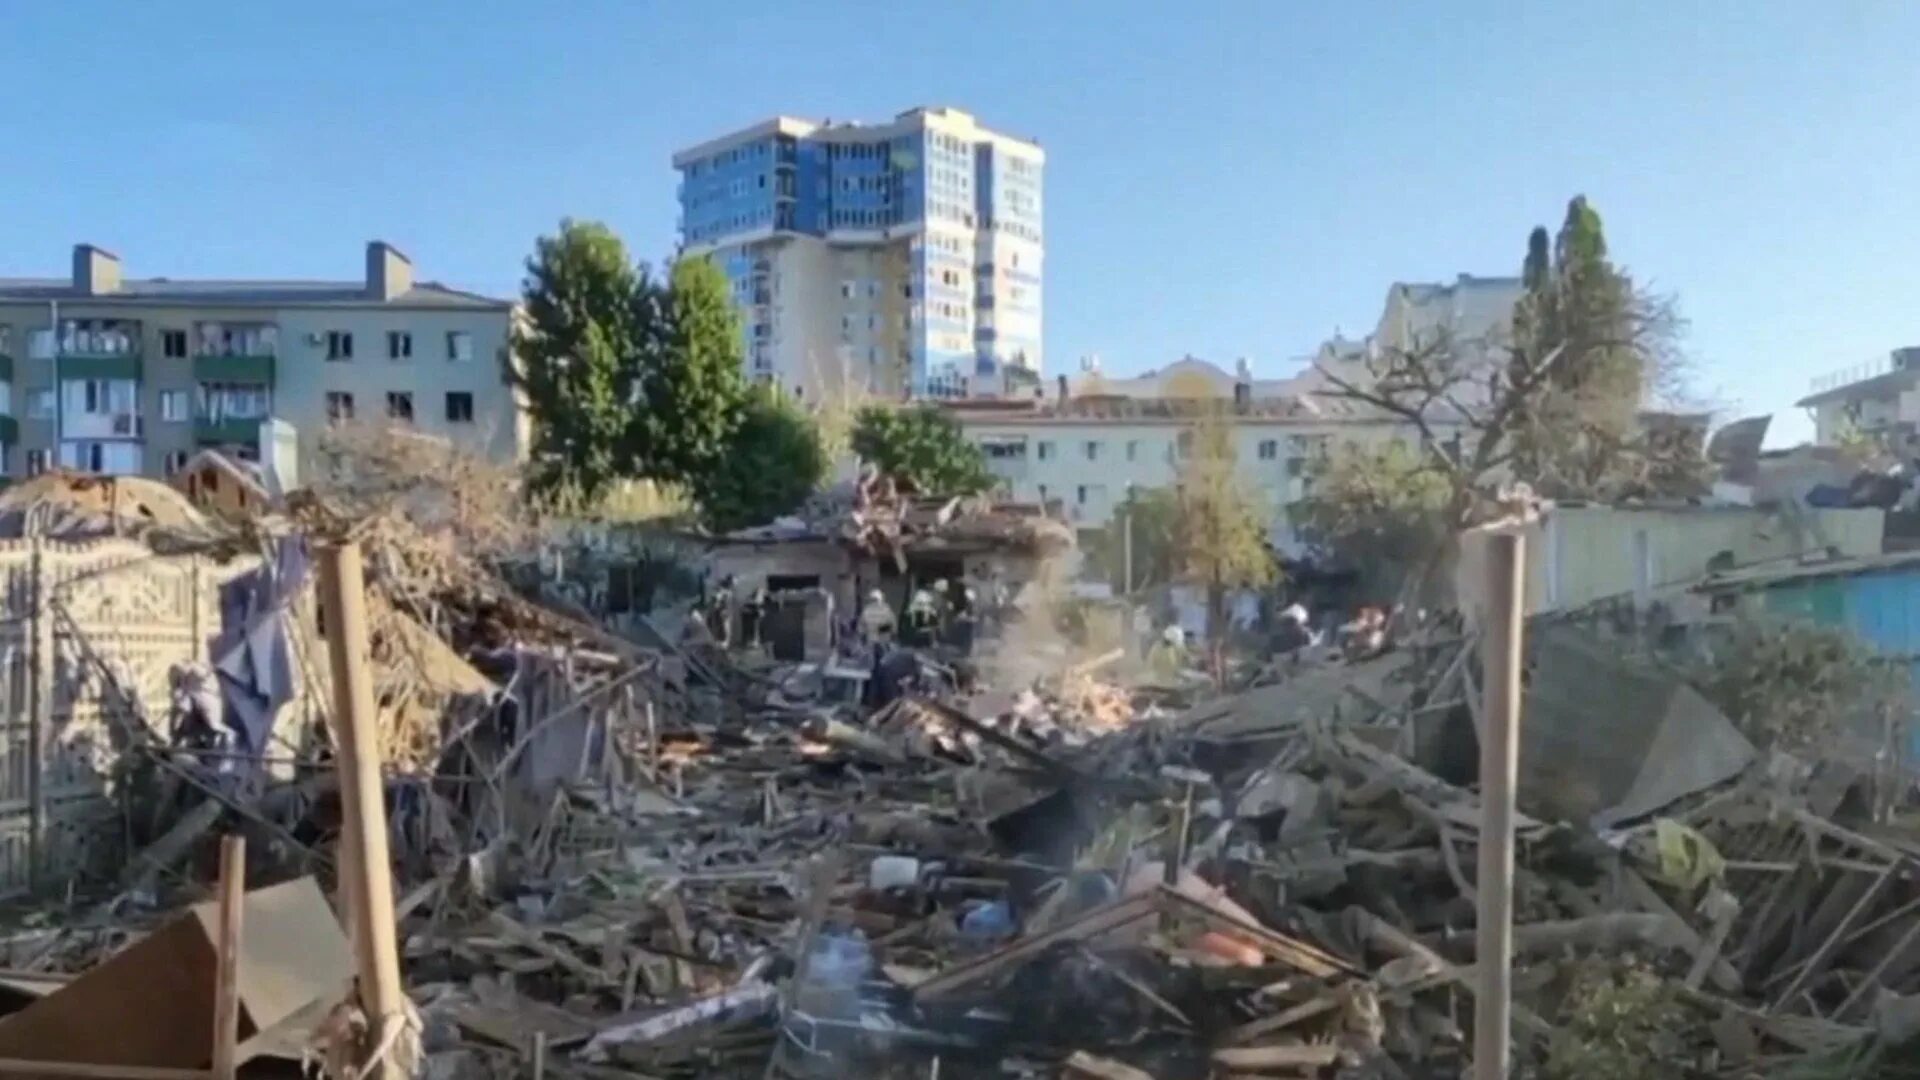 Новости 1 07. Взрыв ы вбелгорожде сейчас. Разрушения в Белгороде 03.07. Взрывы в Белгородской. Разрушенный современный город.